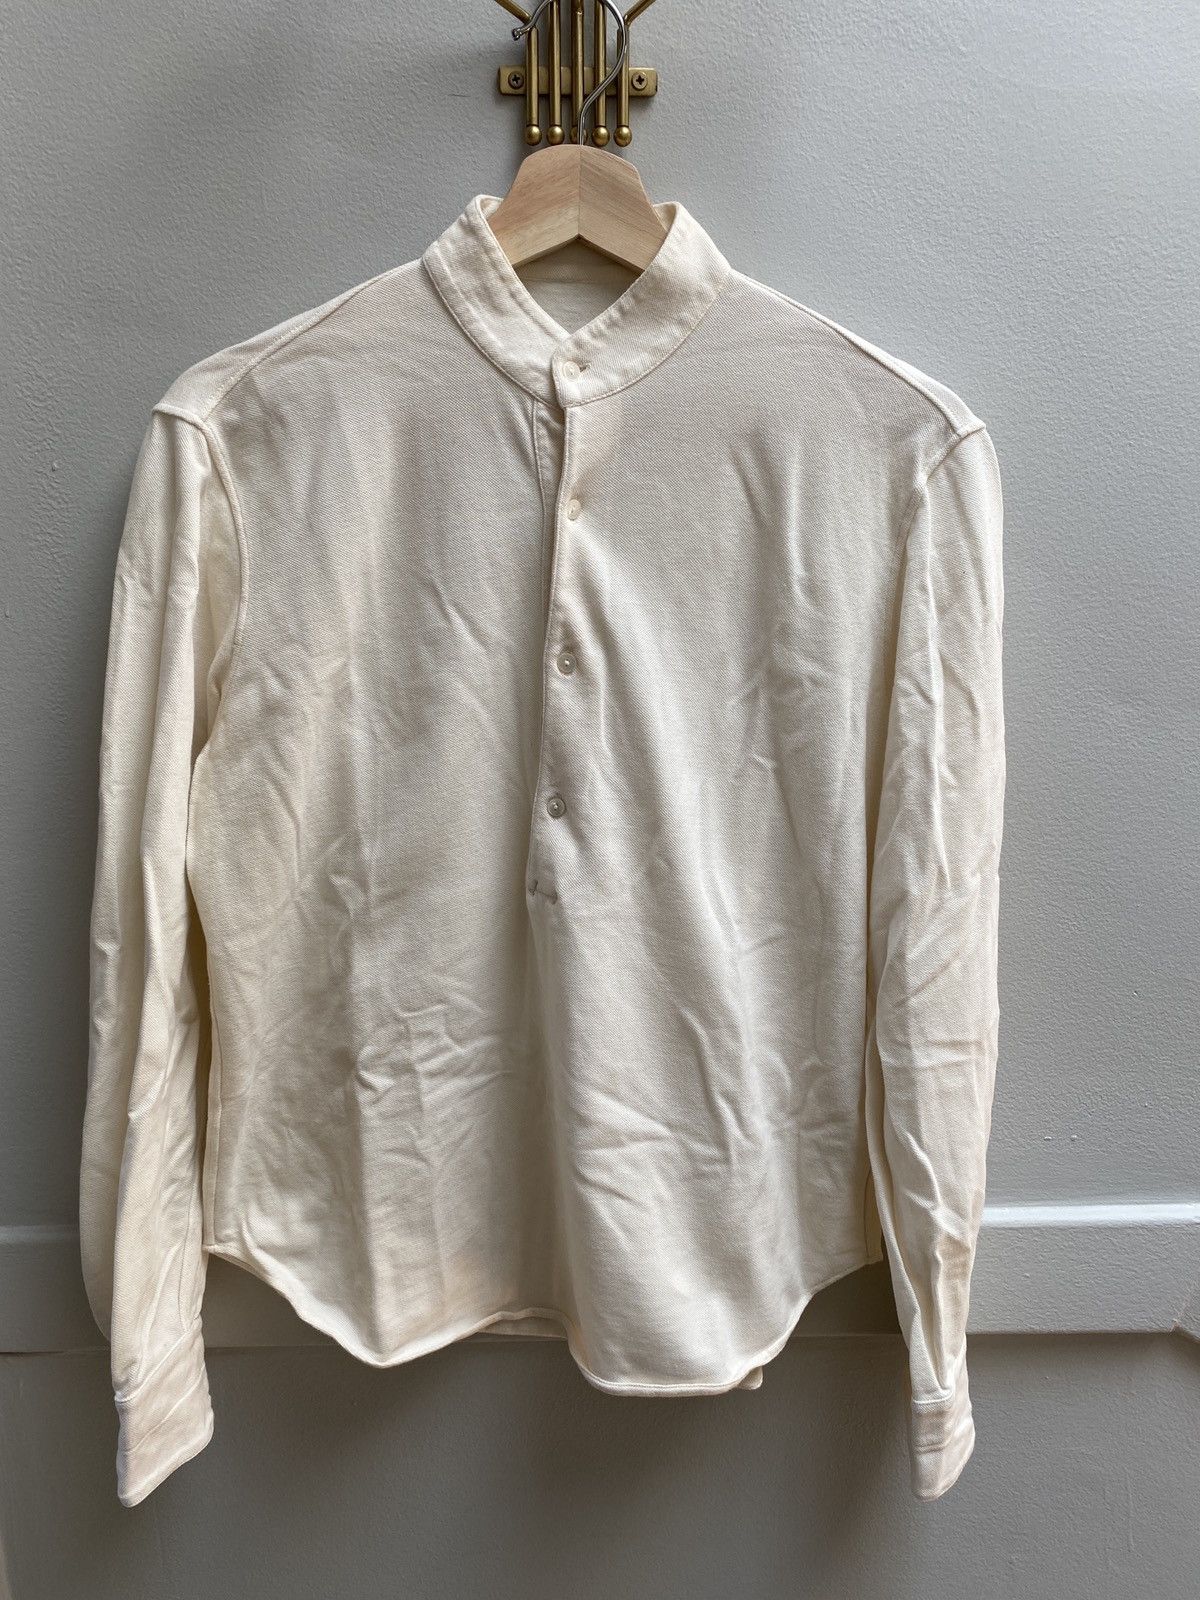 Stoffa Stoffa knit popover shirt, cream, size 46 | Grailed